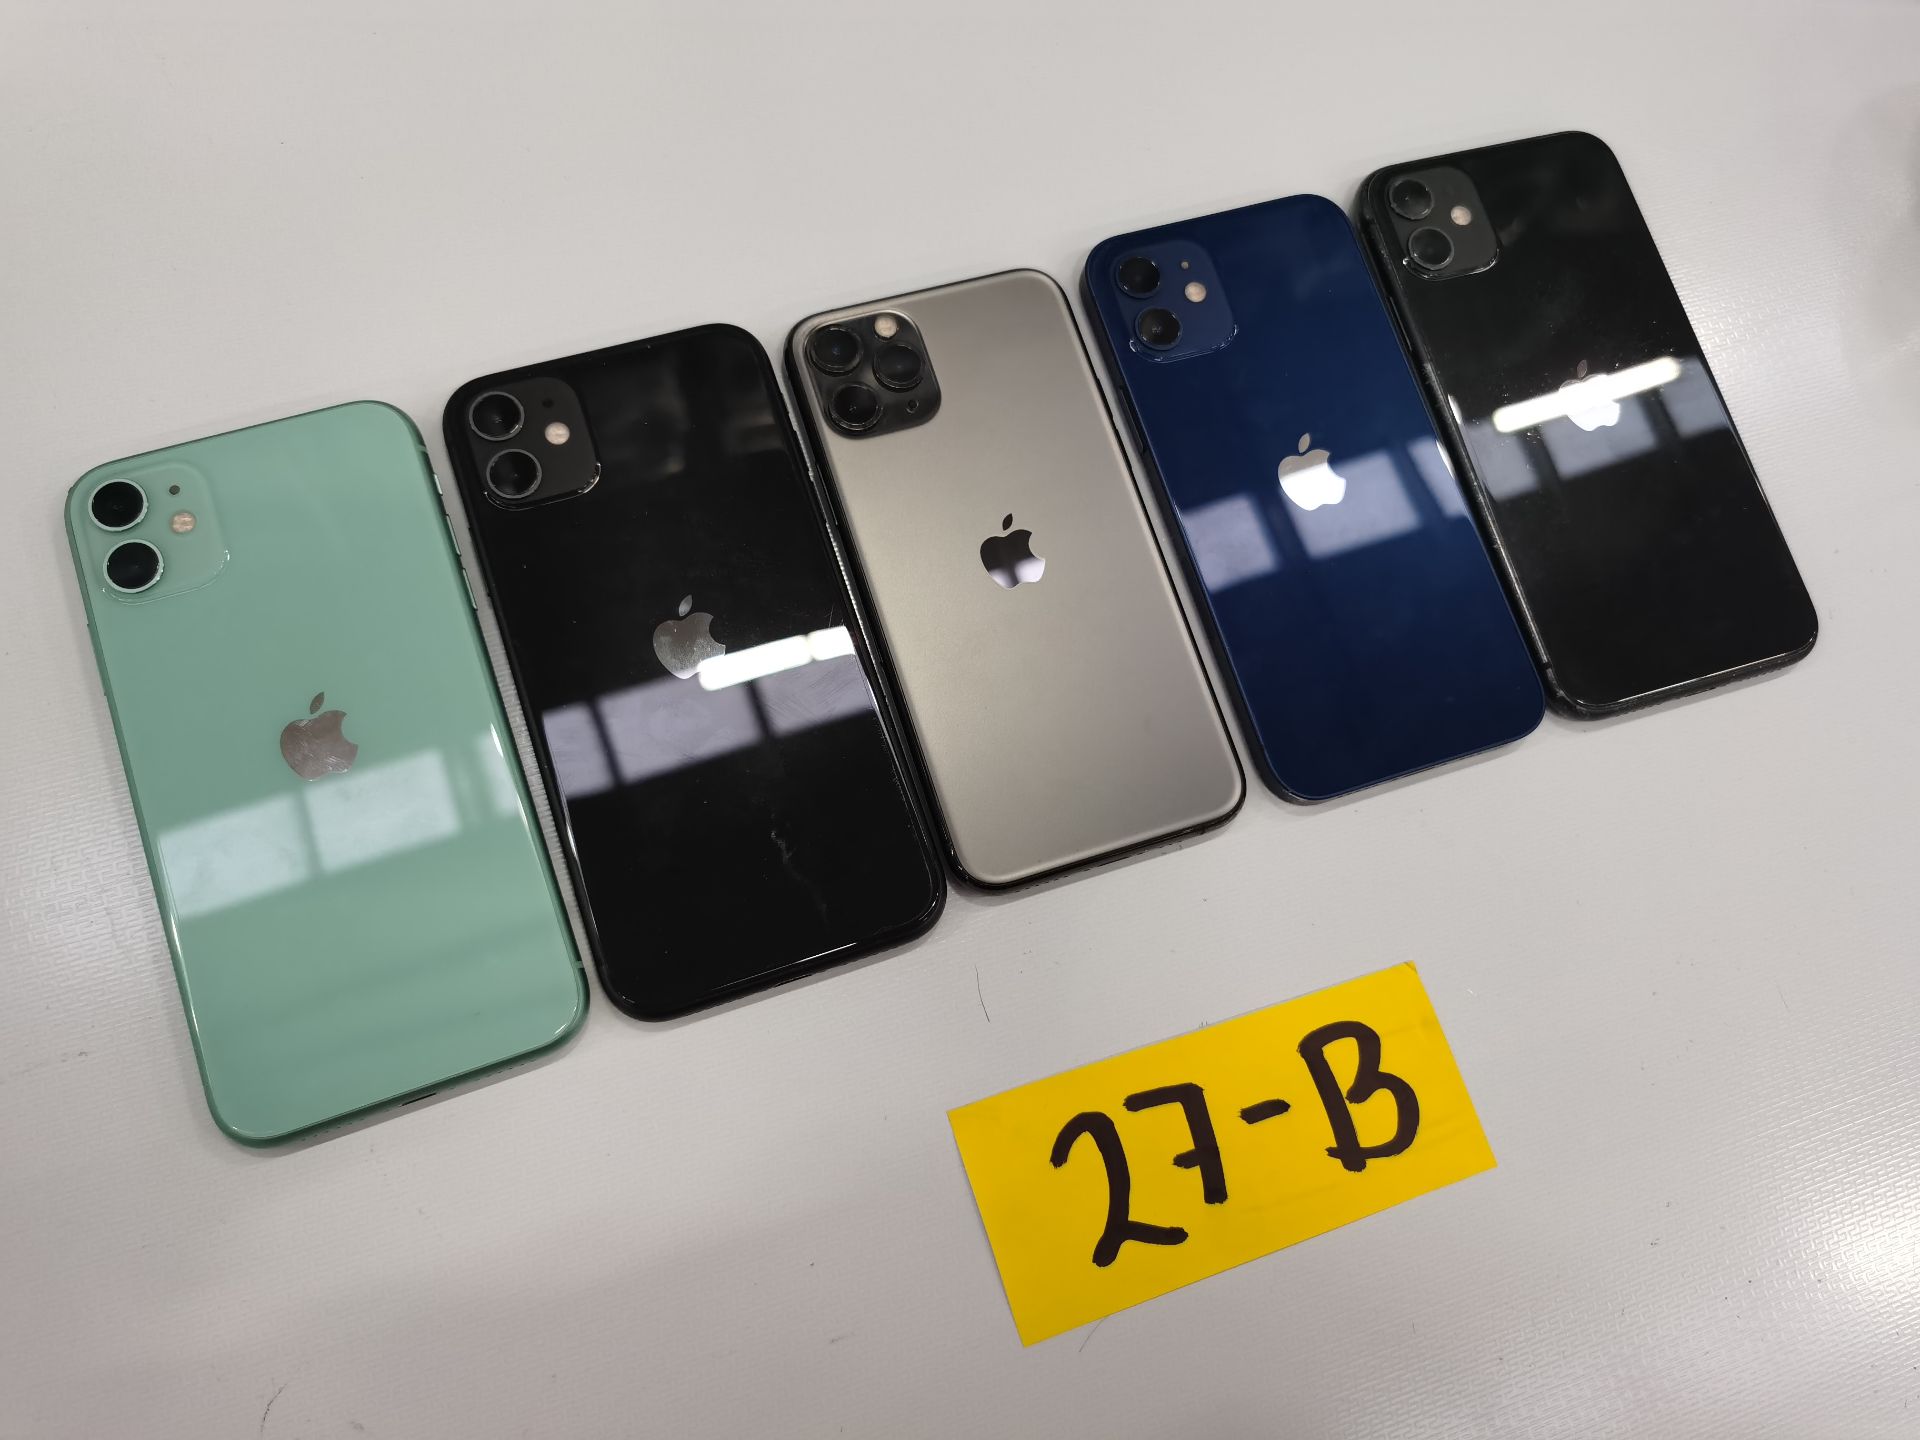 Lote de 5 Equipos Apple: 2 Iphone 12 256GB-64GB y 3 Iphone 11 de 64 GB. - Image 9 of 13